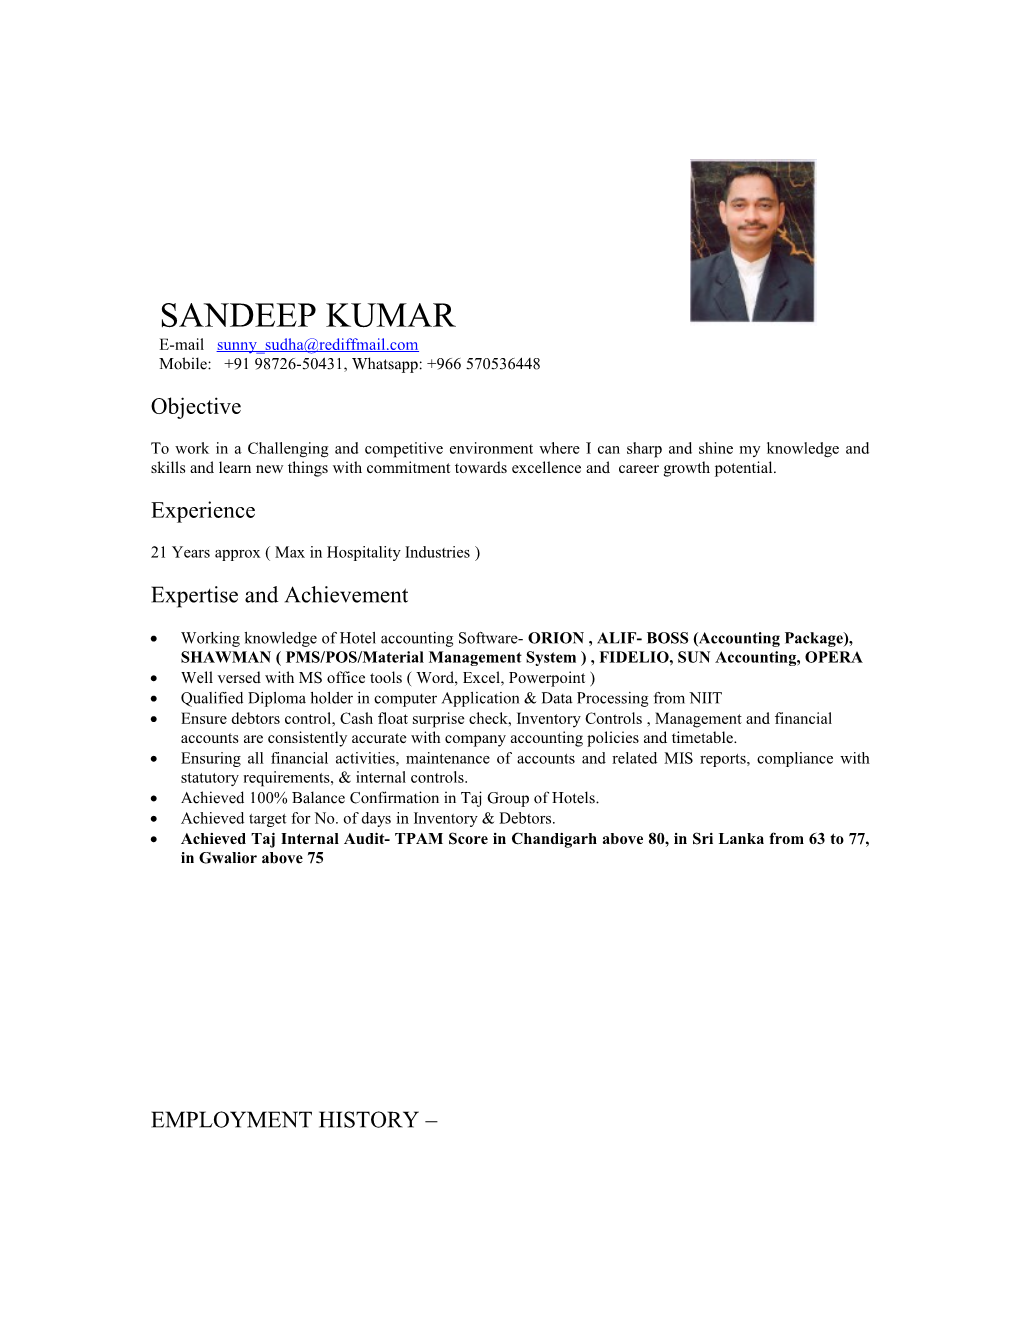 Resume of Sandeep Kumar